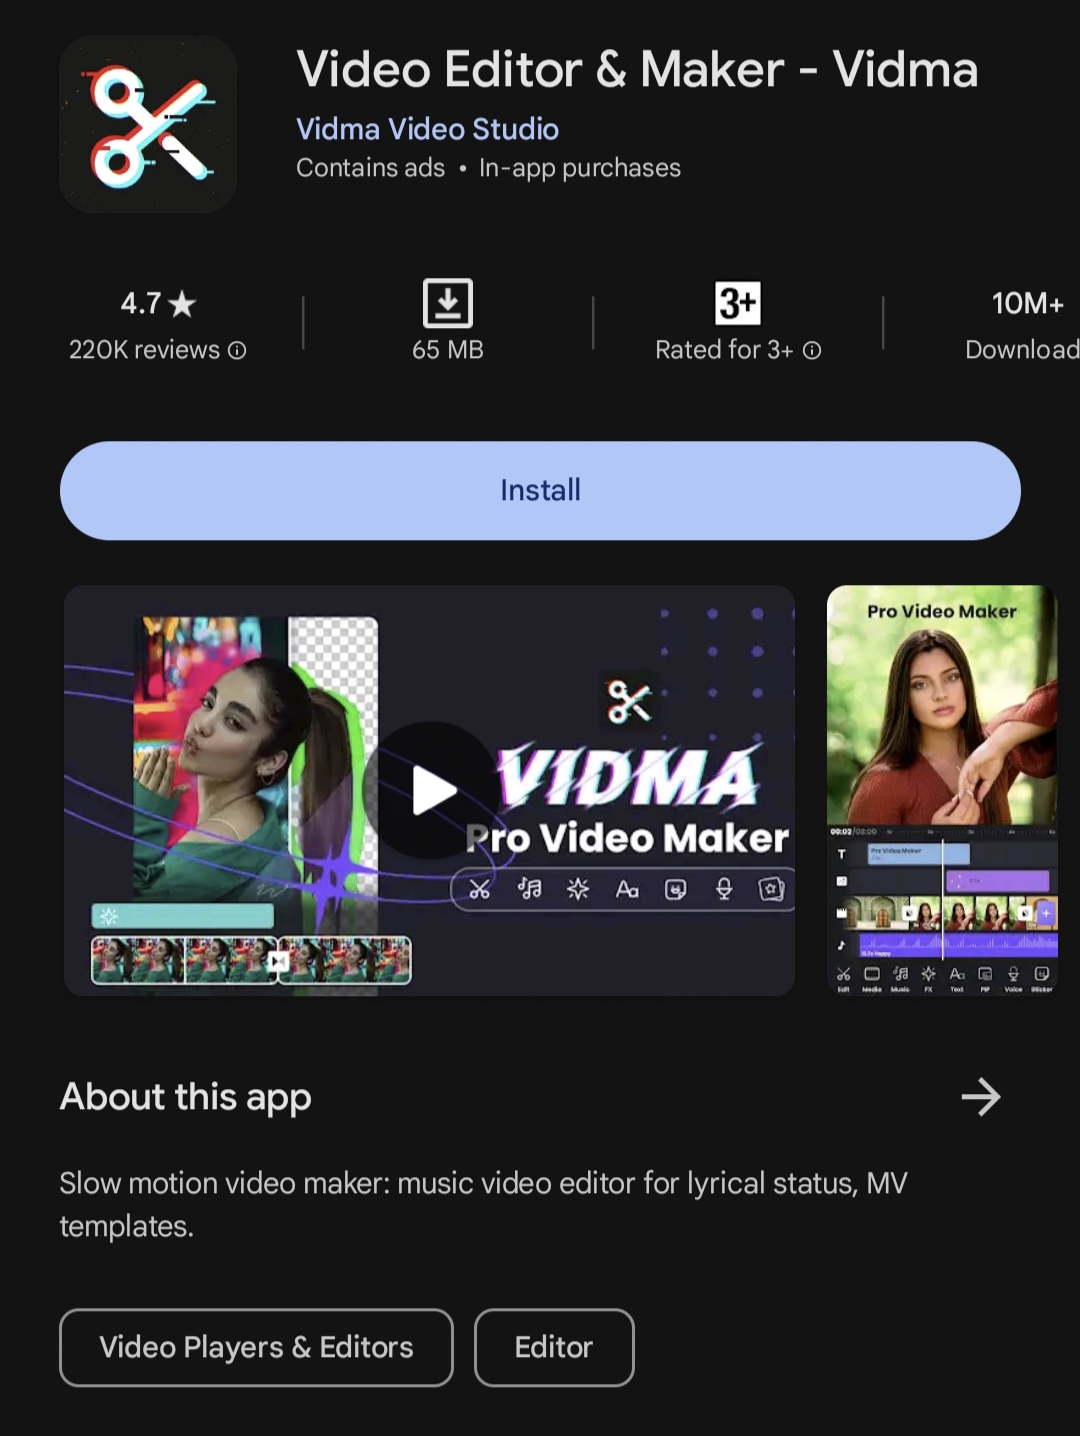 VIDMA Video Editror & Maker: